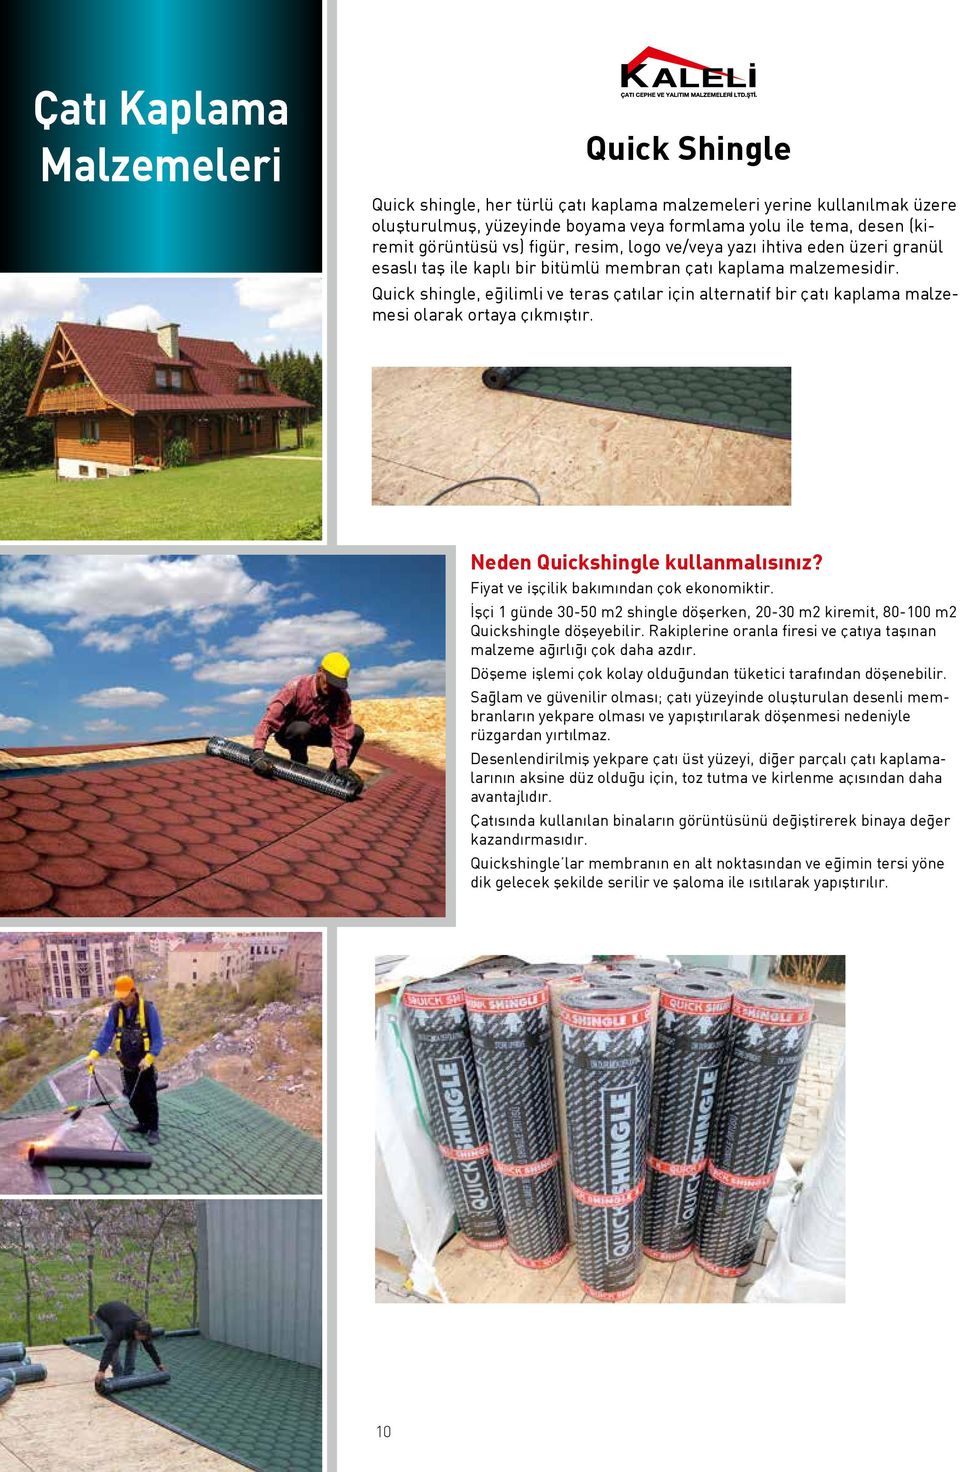 Quick shingle, eğilimli ve teras çatılar için alternatif bir çatı kaplama malzemesi olarak ortaya çıkmıştır. Neden Quickshingle kullanmalısınız? Fiyat ve işçilik bakımından çok ekonomiktir.